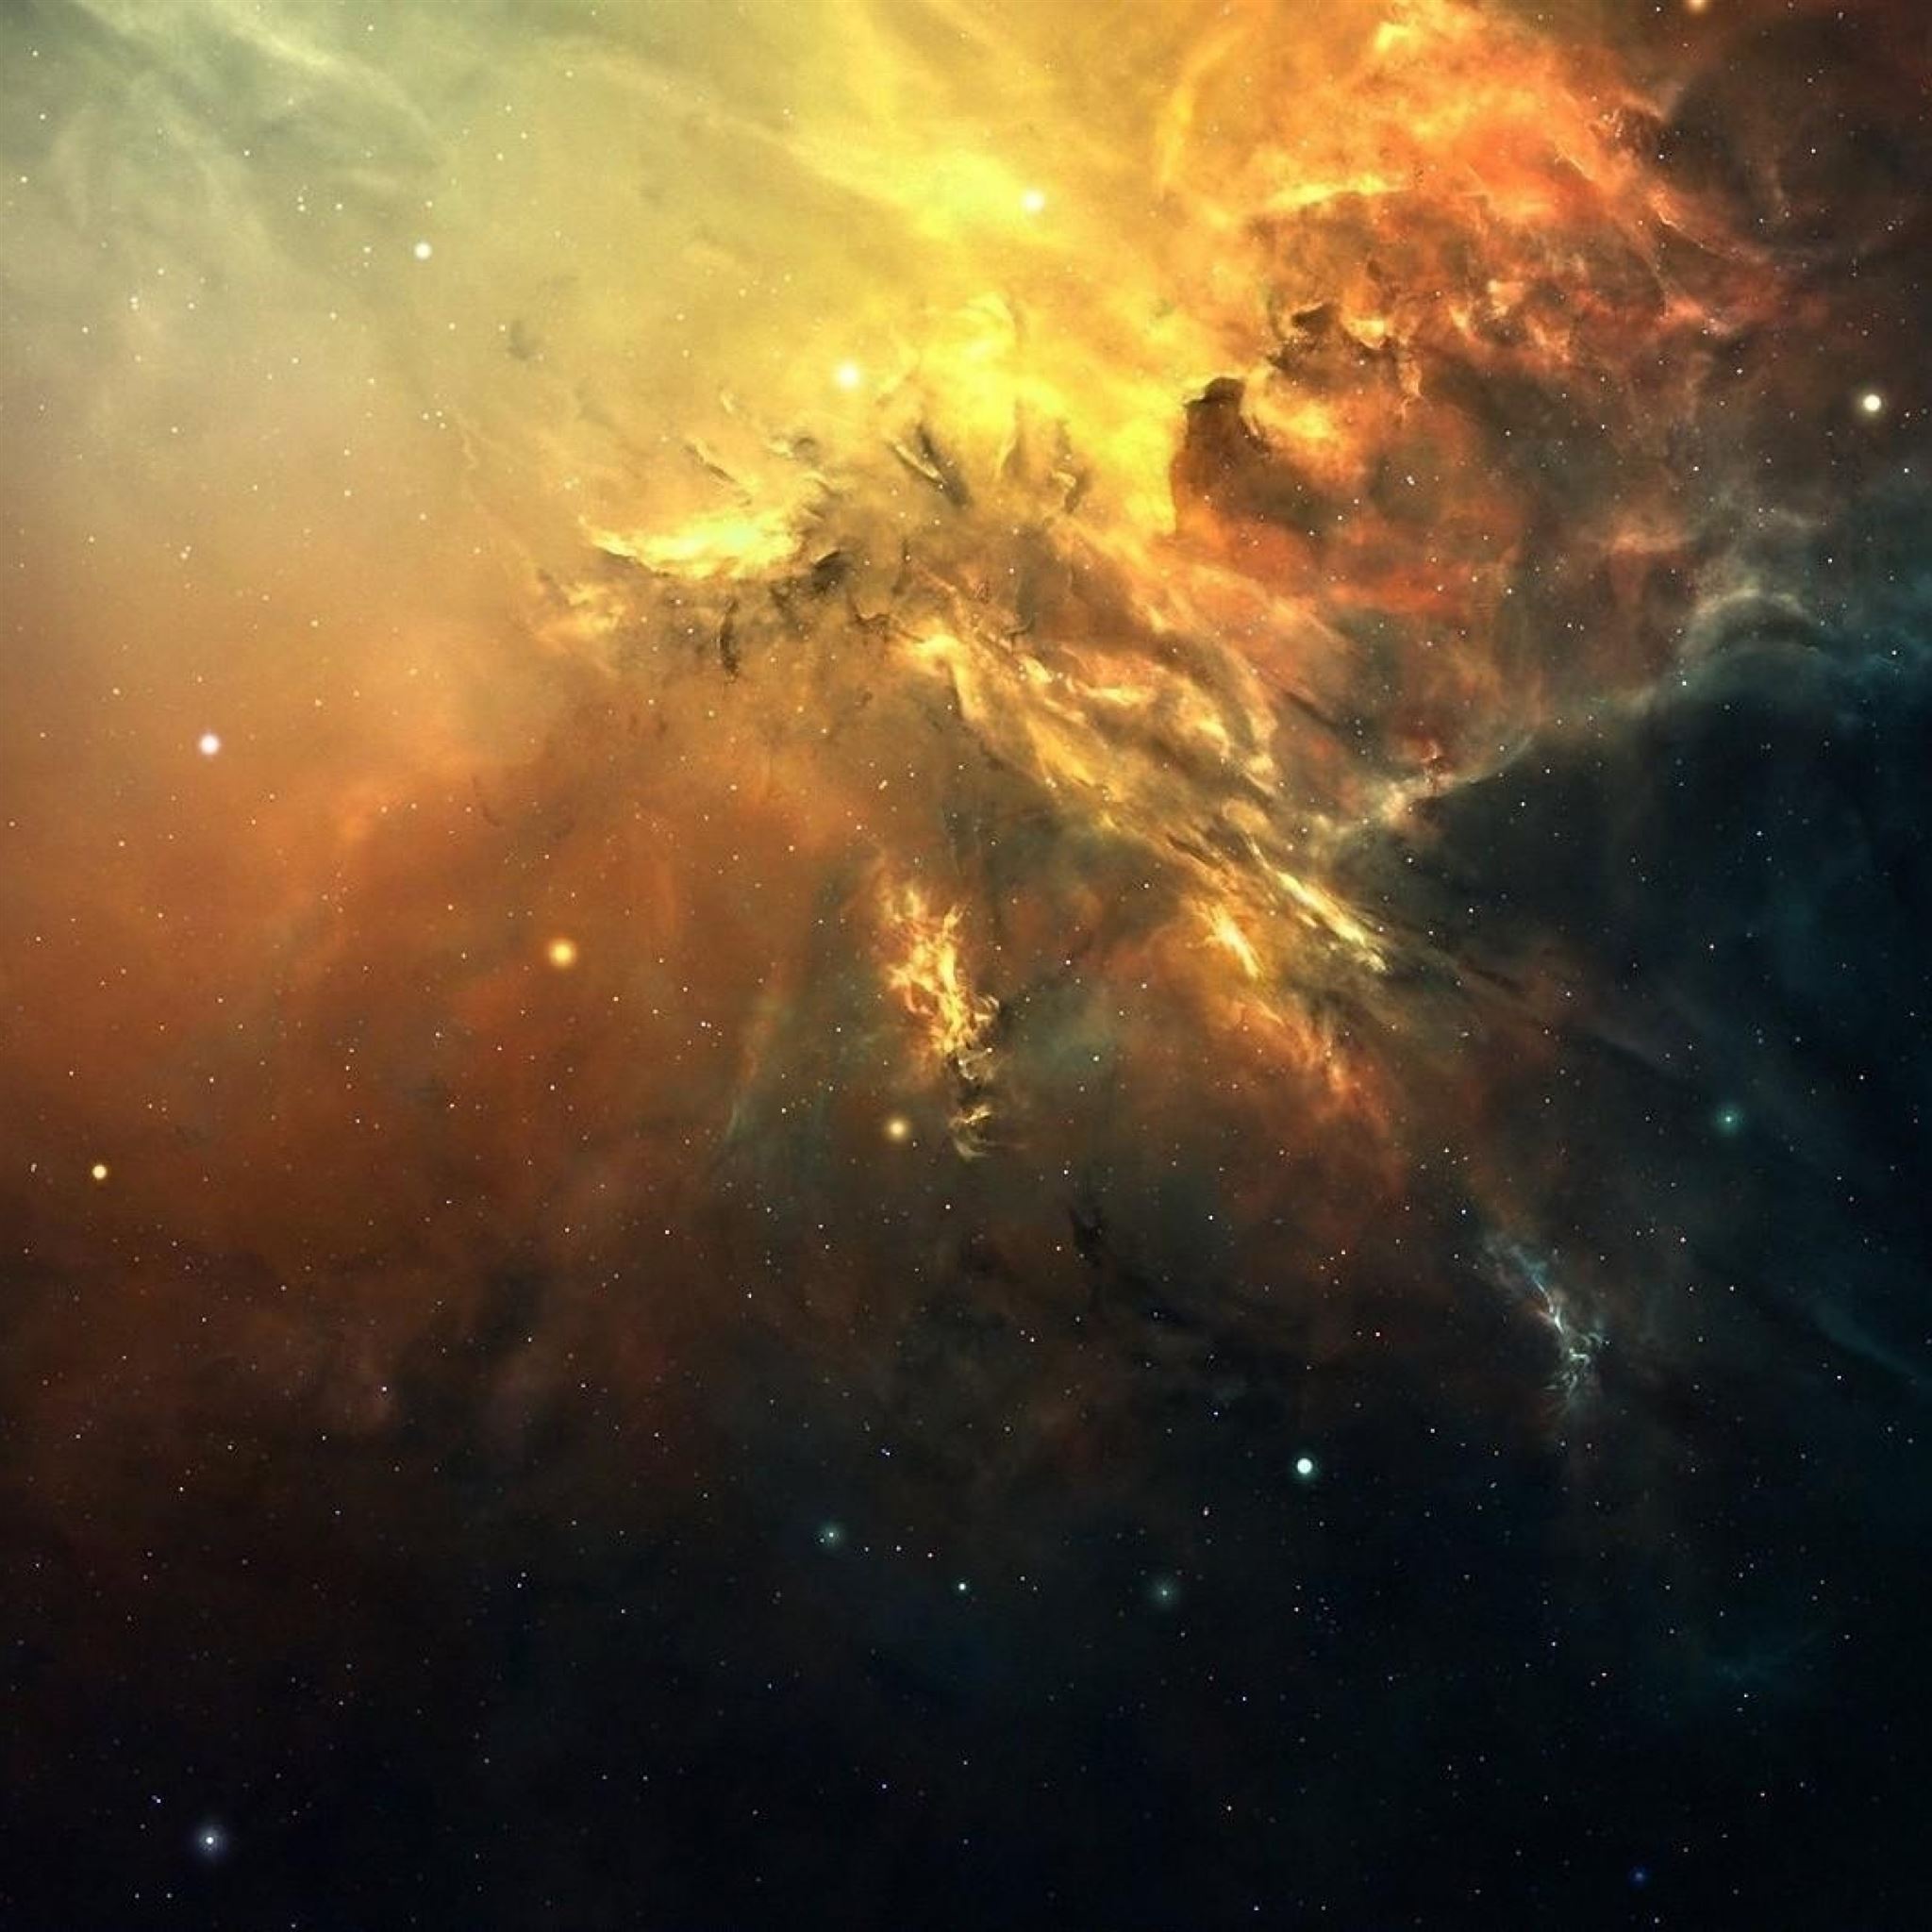 Hình nền iPad Pro về không gian: Hãy làm mới màn hình iPad Pro của bạn với các hình nền đẹp về không gian. Từ các hình ảnh hấp dẫn của sao chổi, vũ trụ và các công trình vũ trụ nổi tiếng, bạn sẽ có một màn hình độc đáo và ấn tượng.